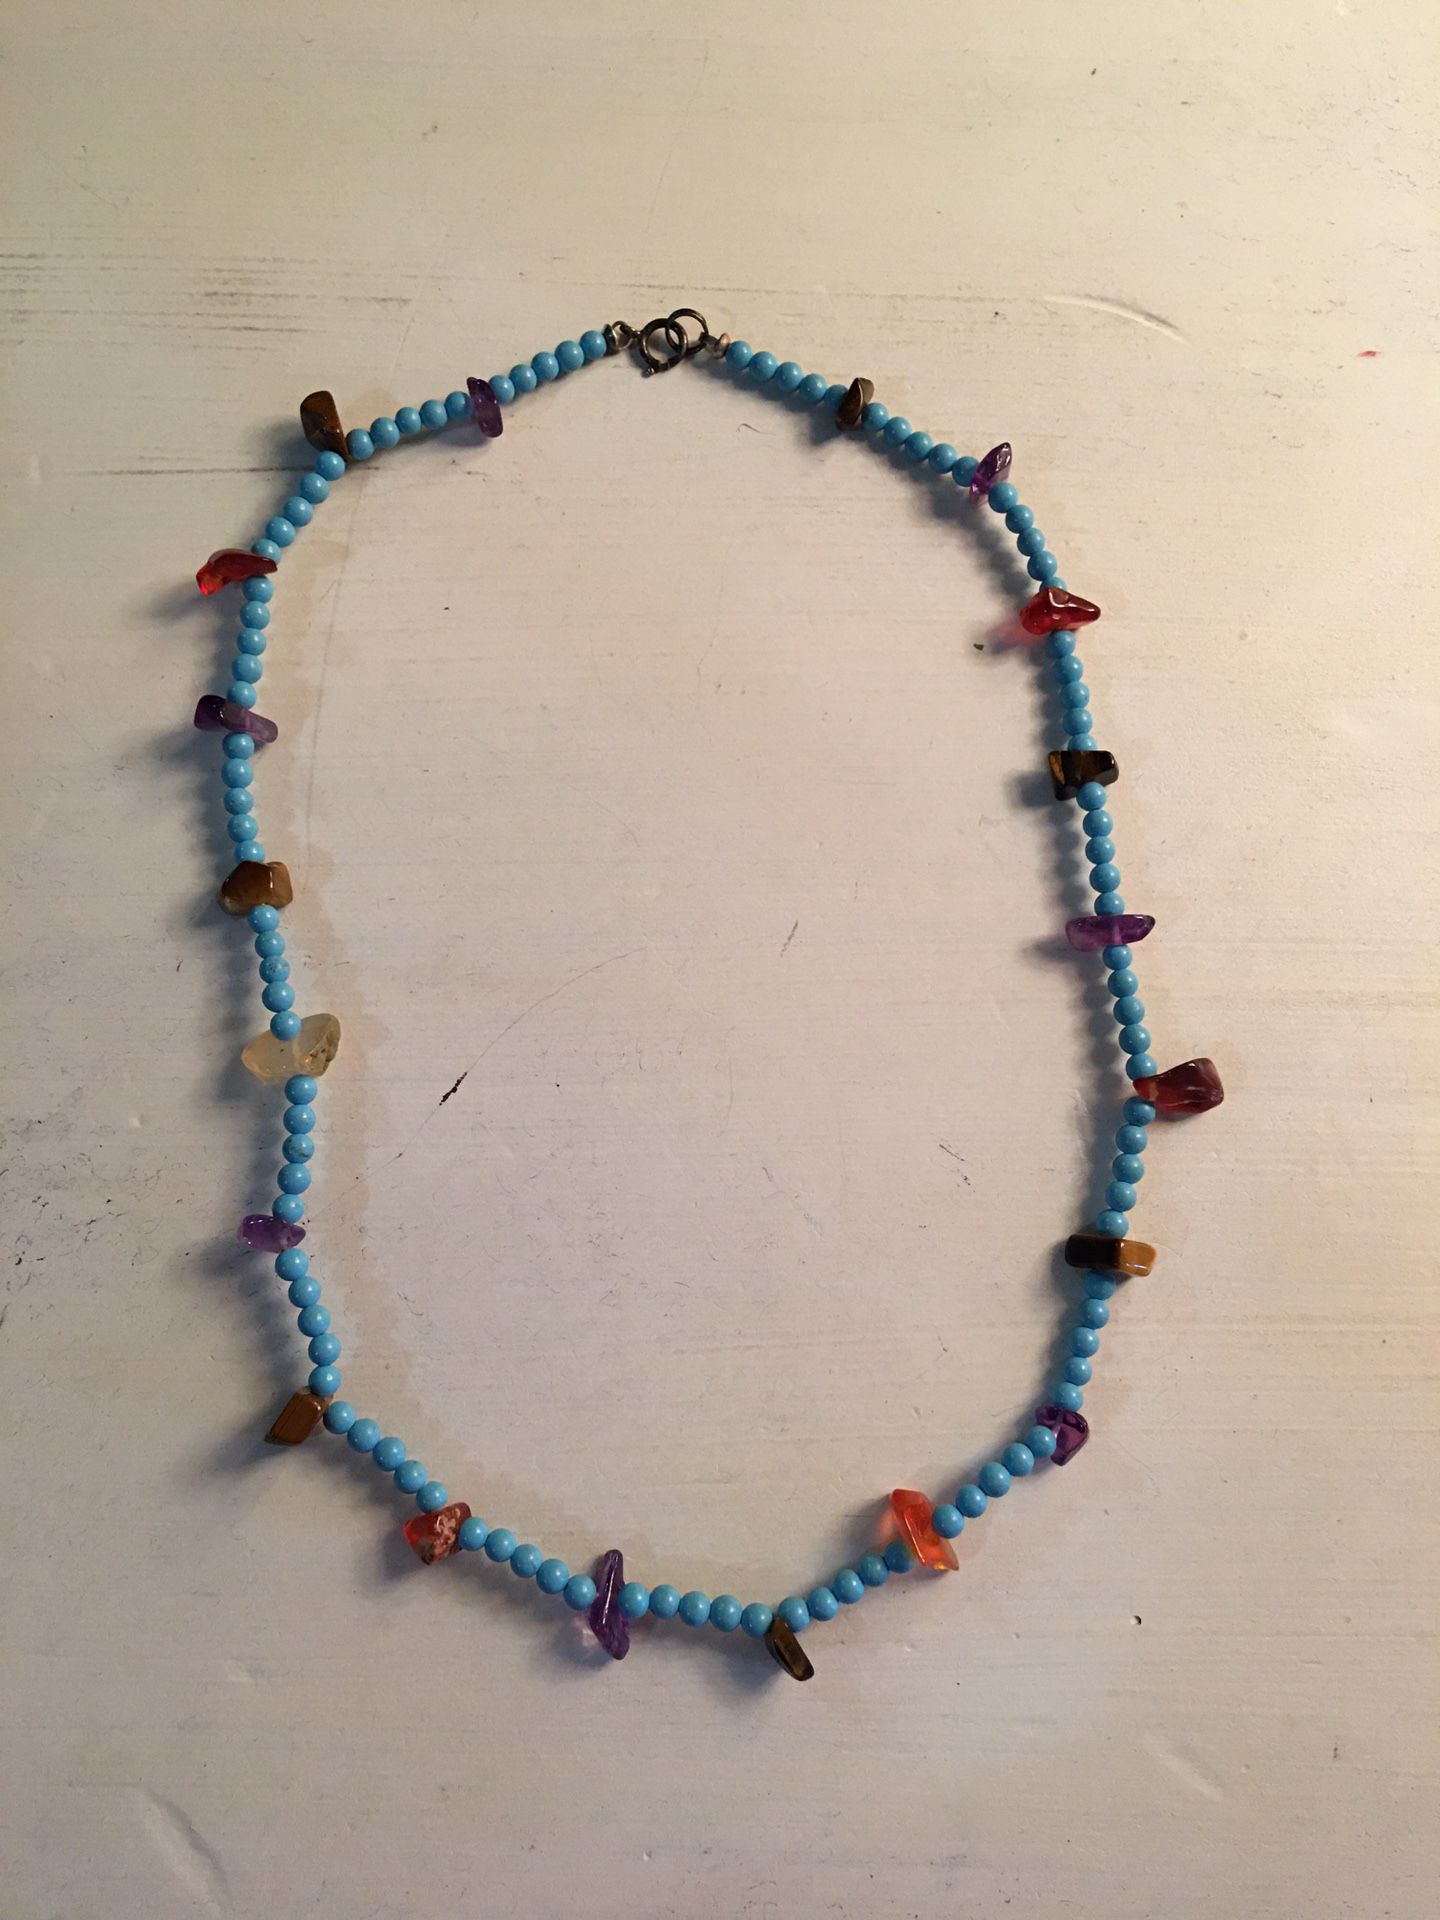 Vintage sterling turquoise and gemstone necklace/bracelet